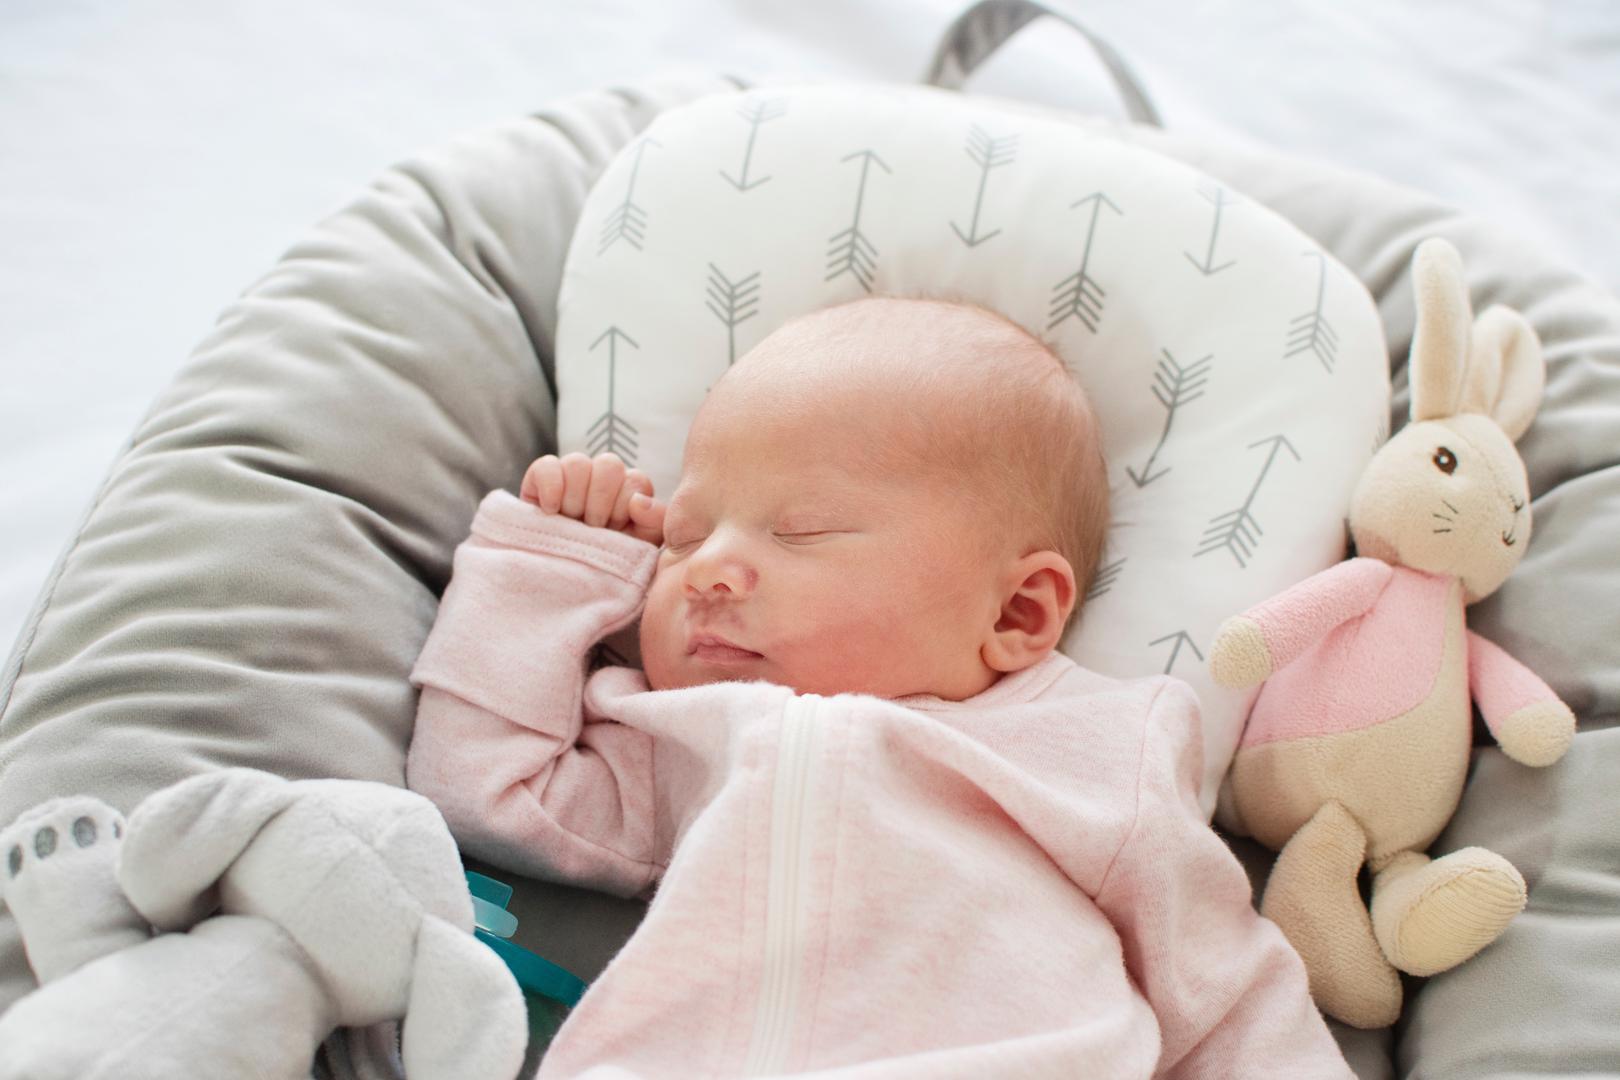 6. Jastuci za novorođenčad: Pozicioneri za spavanje, jastuci i 'gnijezda' za bebe popularni su među roditeljima, ali se ne preporučuju za spavanje. Lullaby Trust navodi da bi bebe trebale spavati samo na čvrstoj, ravnoj površini jer su jastuci za spavanje premekani pa bi se beba mogla okrenuti i pritisnuti licem u njih, što predstavlja opasnost od gušenja. Proizvođači često navode da se ovi predmeti ne smiju koristiti dok vaša beba spava, ali opasnost dolazi ako bebe zaspu dok se odmaraju ili ako ih roditelj zaboravi pomaknuti. U rujnu 2021. američka tvrtka Boppy Company povukla je 3,3 milijuna svojih jastuka za novorođenčad zbog smrti osmero dojenčadi između prosinca 2015. i lipnja 2020.